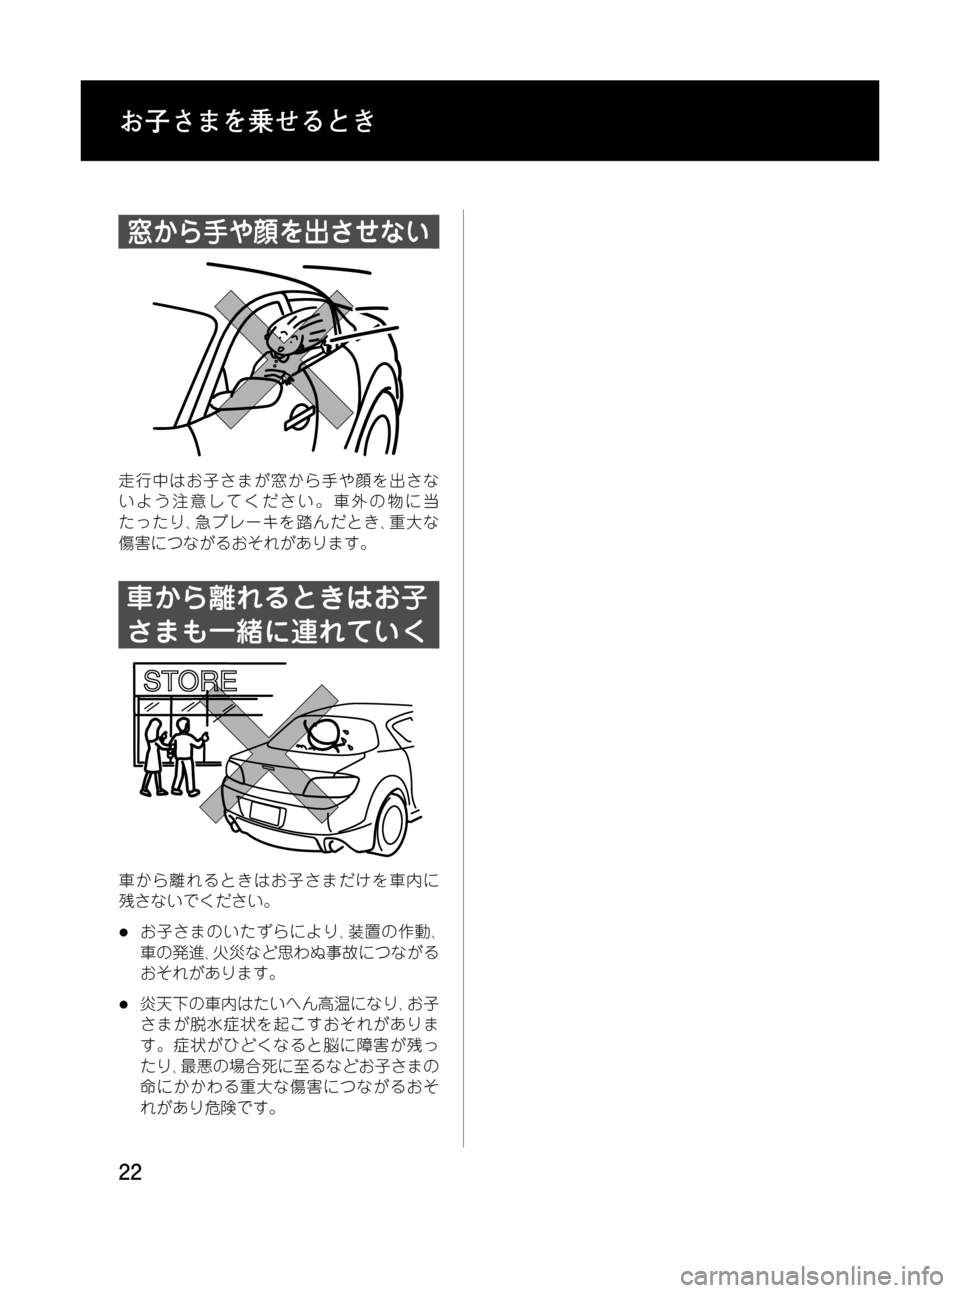 MAZDA MODEL RX 8 2008  取扱説明書 (in Japanese) Black plate (22,1)
窓から手や顔を出させない
走行中はお子さまが窓から手や顔を出さな
いよう注意してください。車外の物に当
たったり､急ブレーキ�